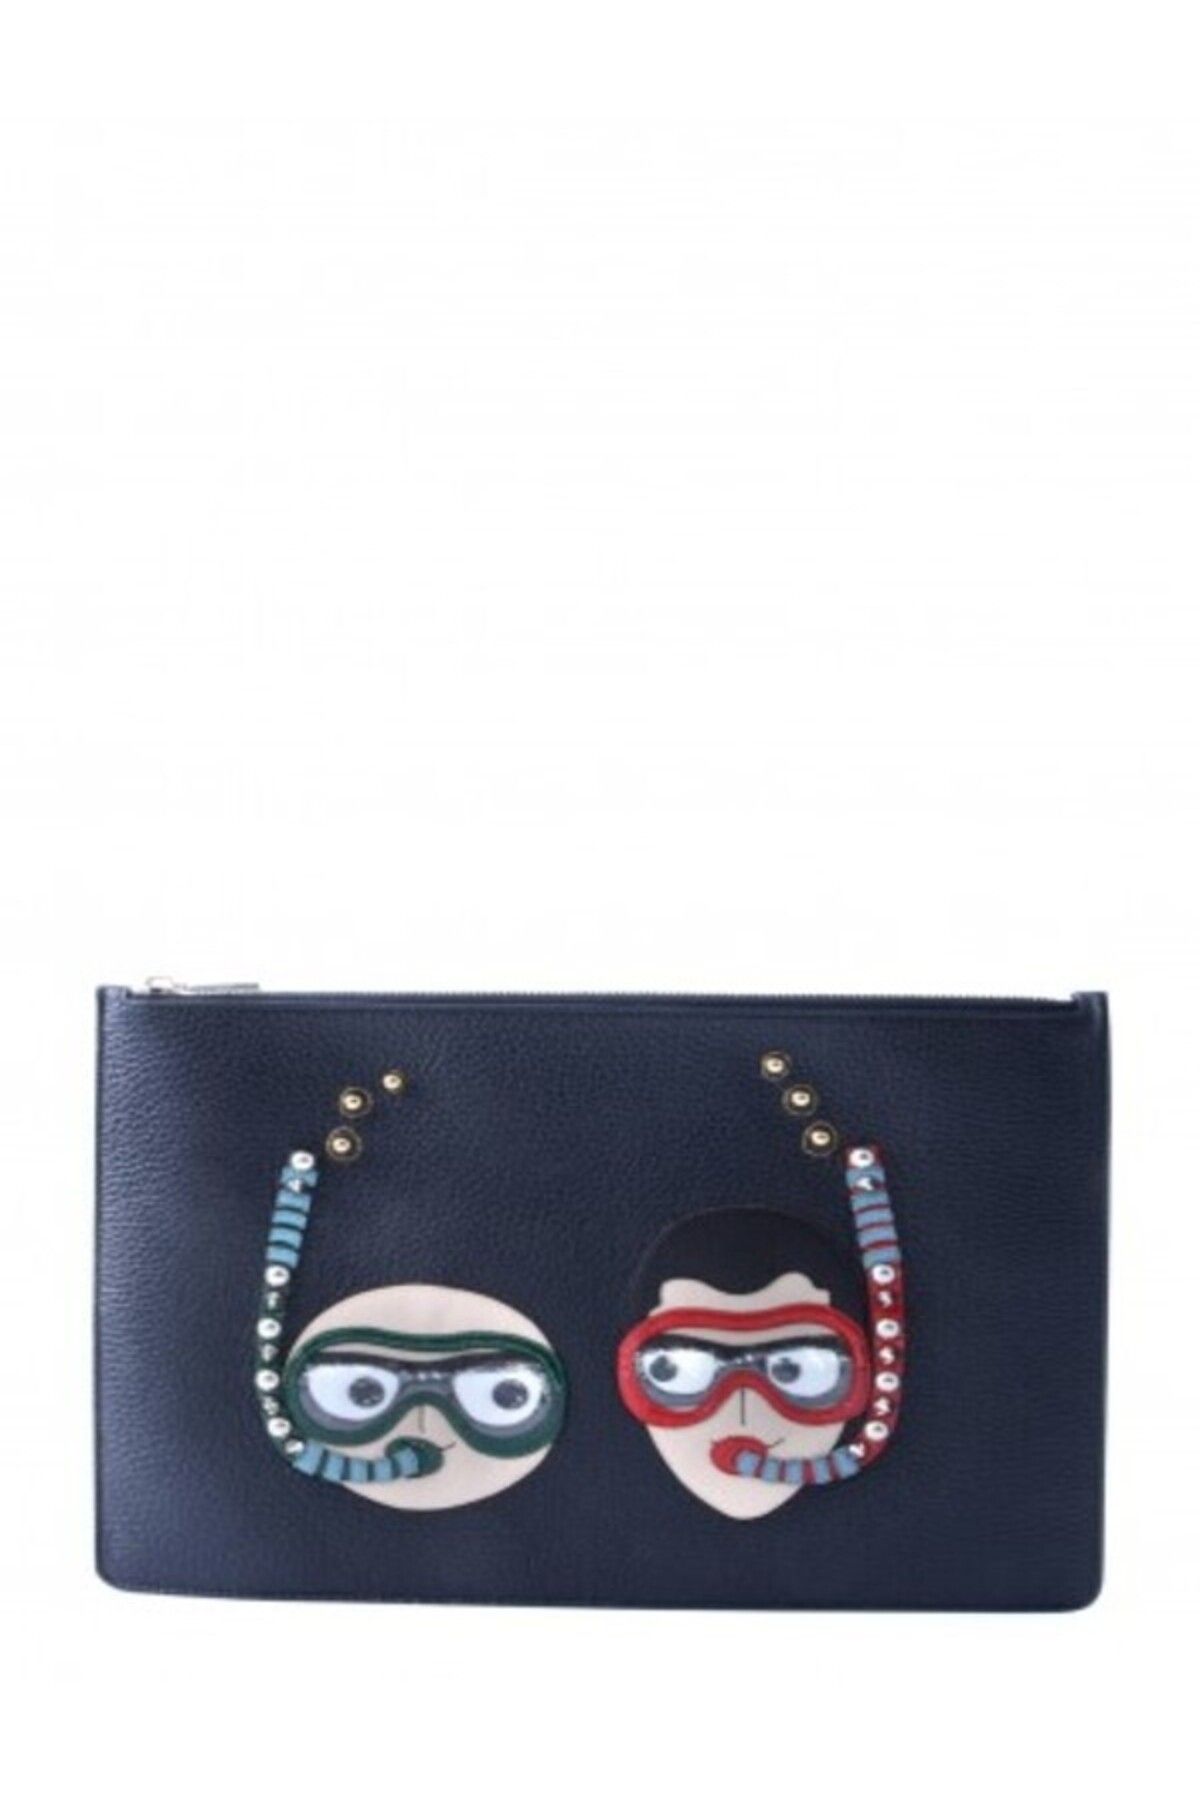 Dolce&Gabbana çanta